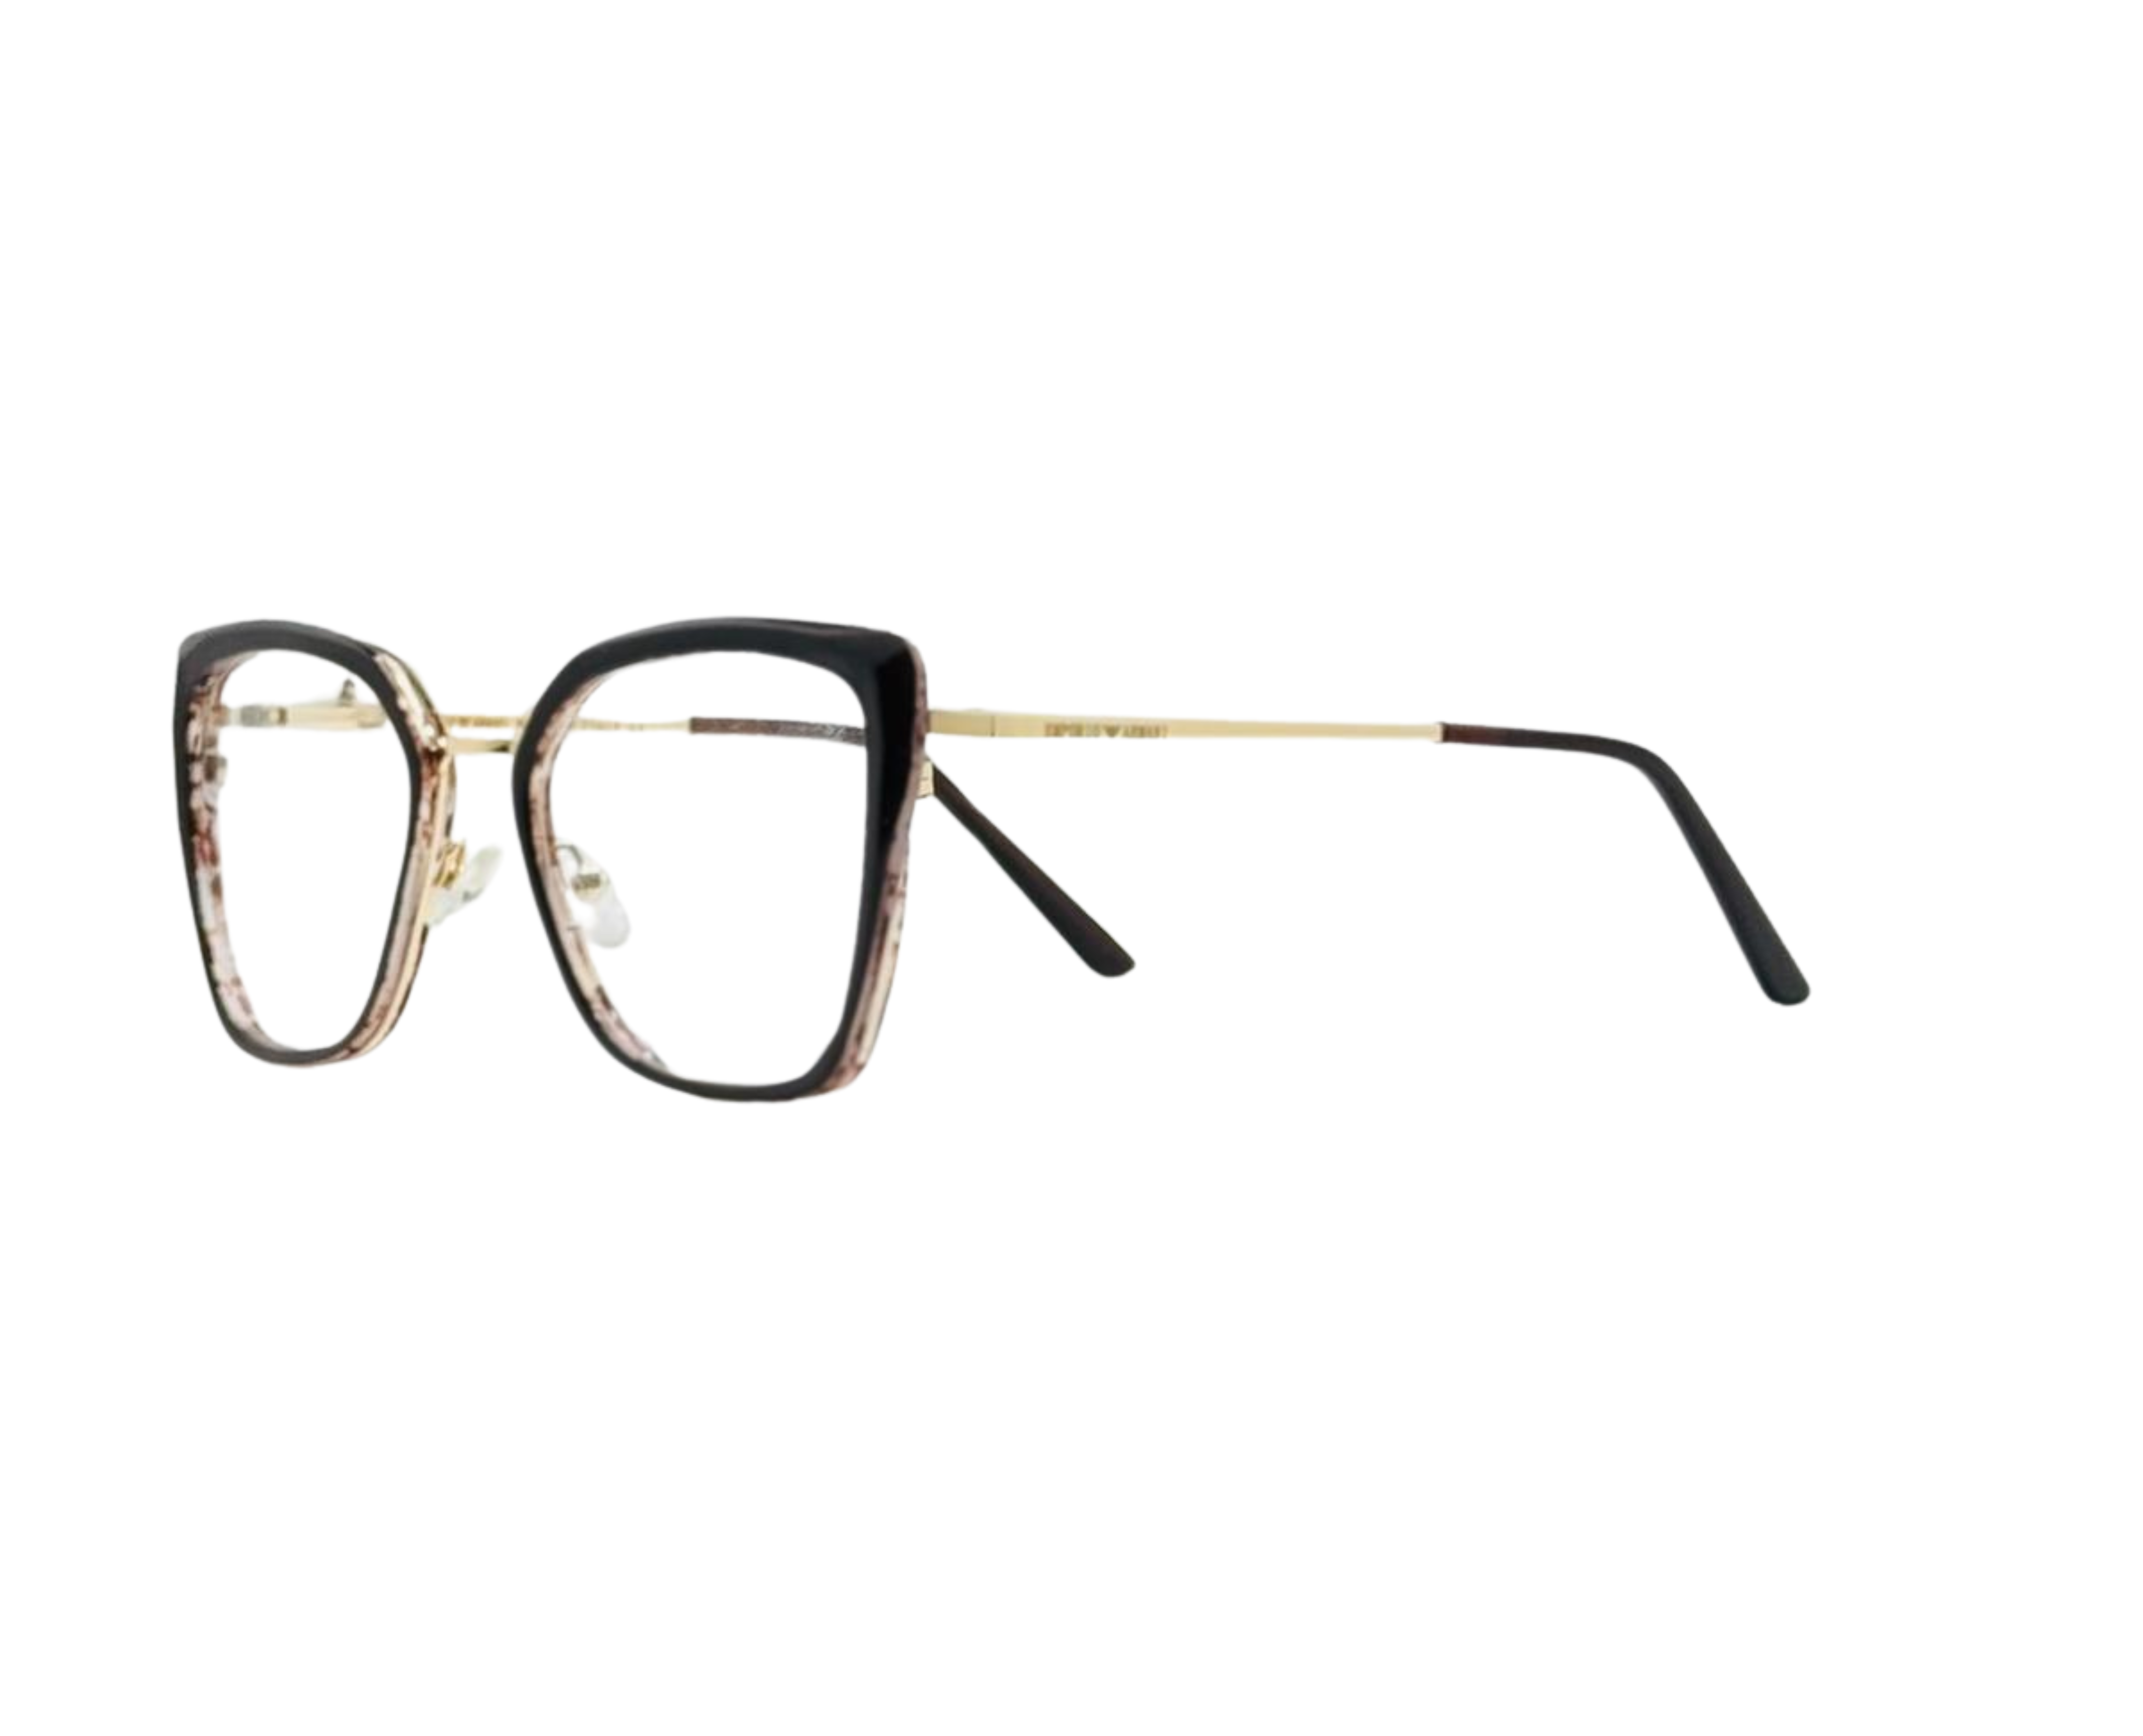 NS Luxury - J09 - Black - Eyeglasses